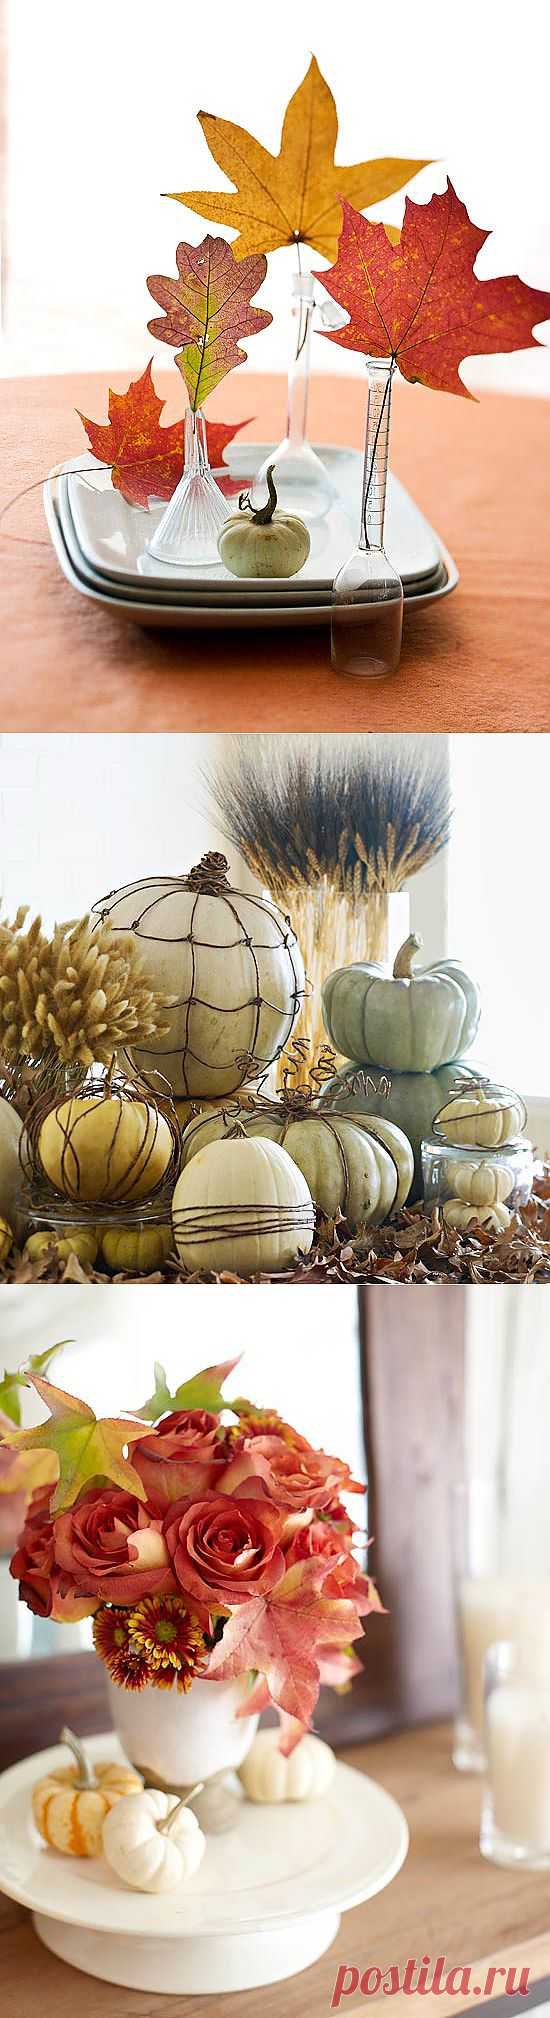 Осенний декор из натуральных материалов | Дом-Цветник